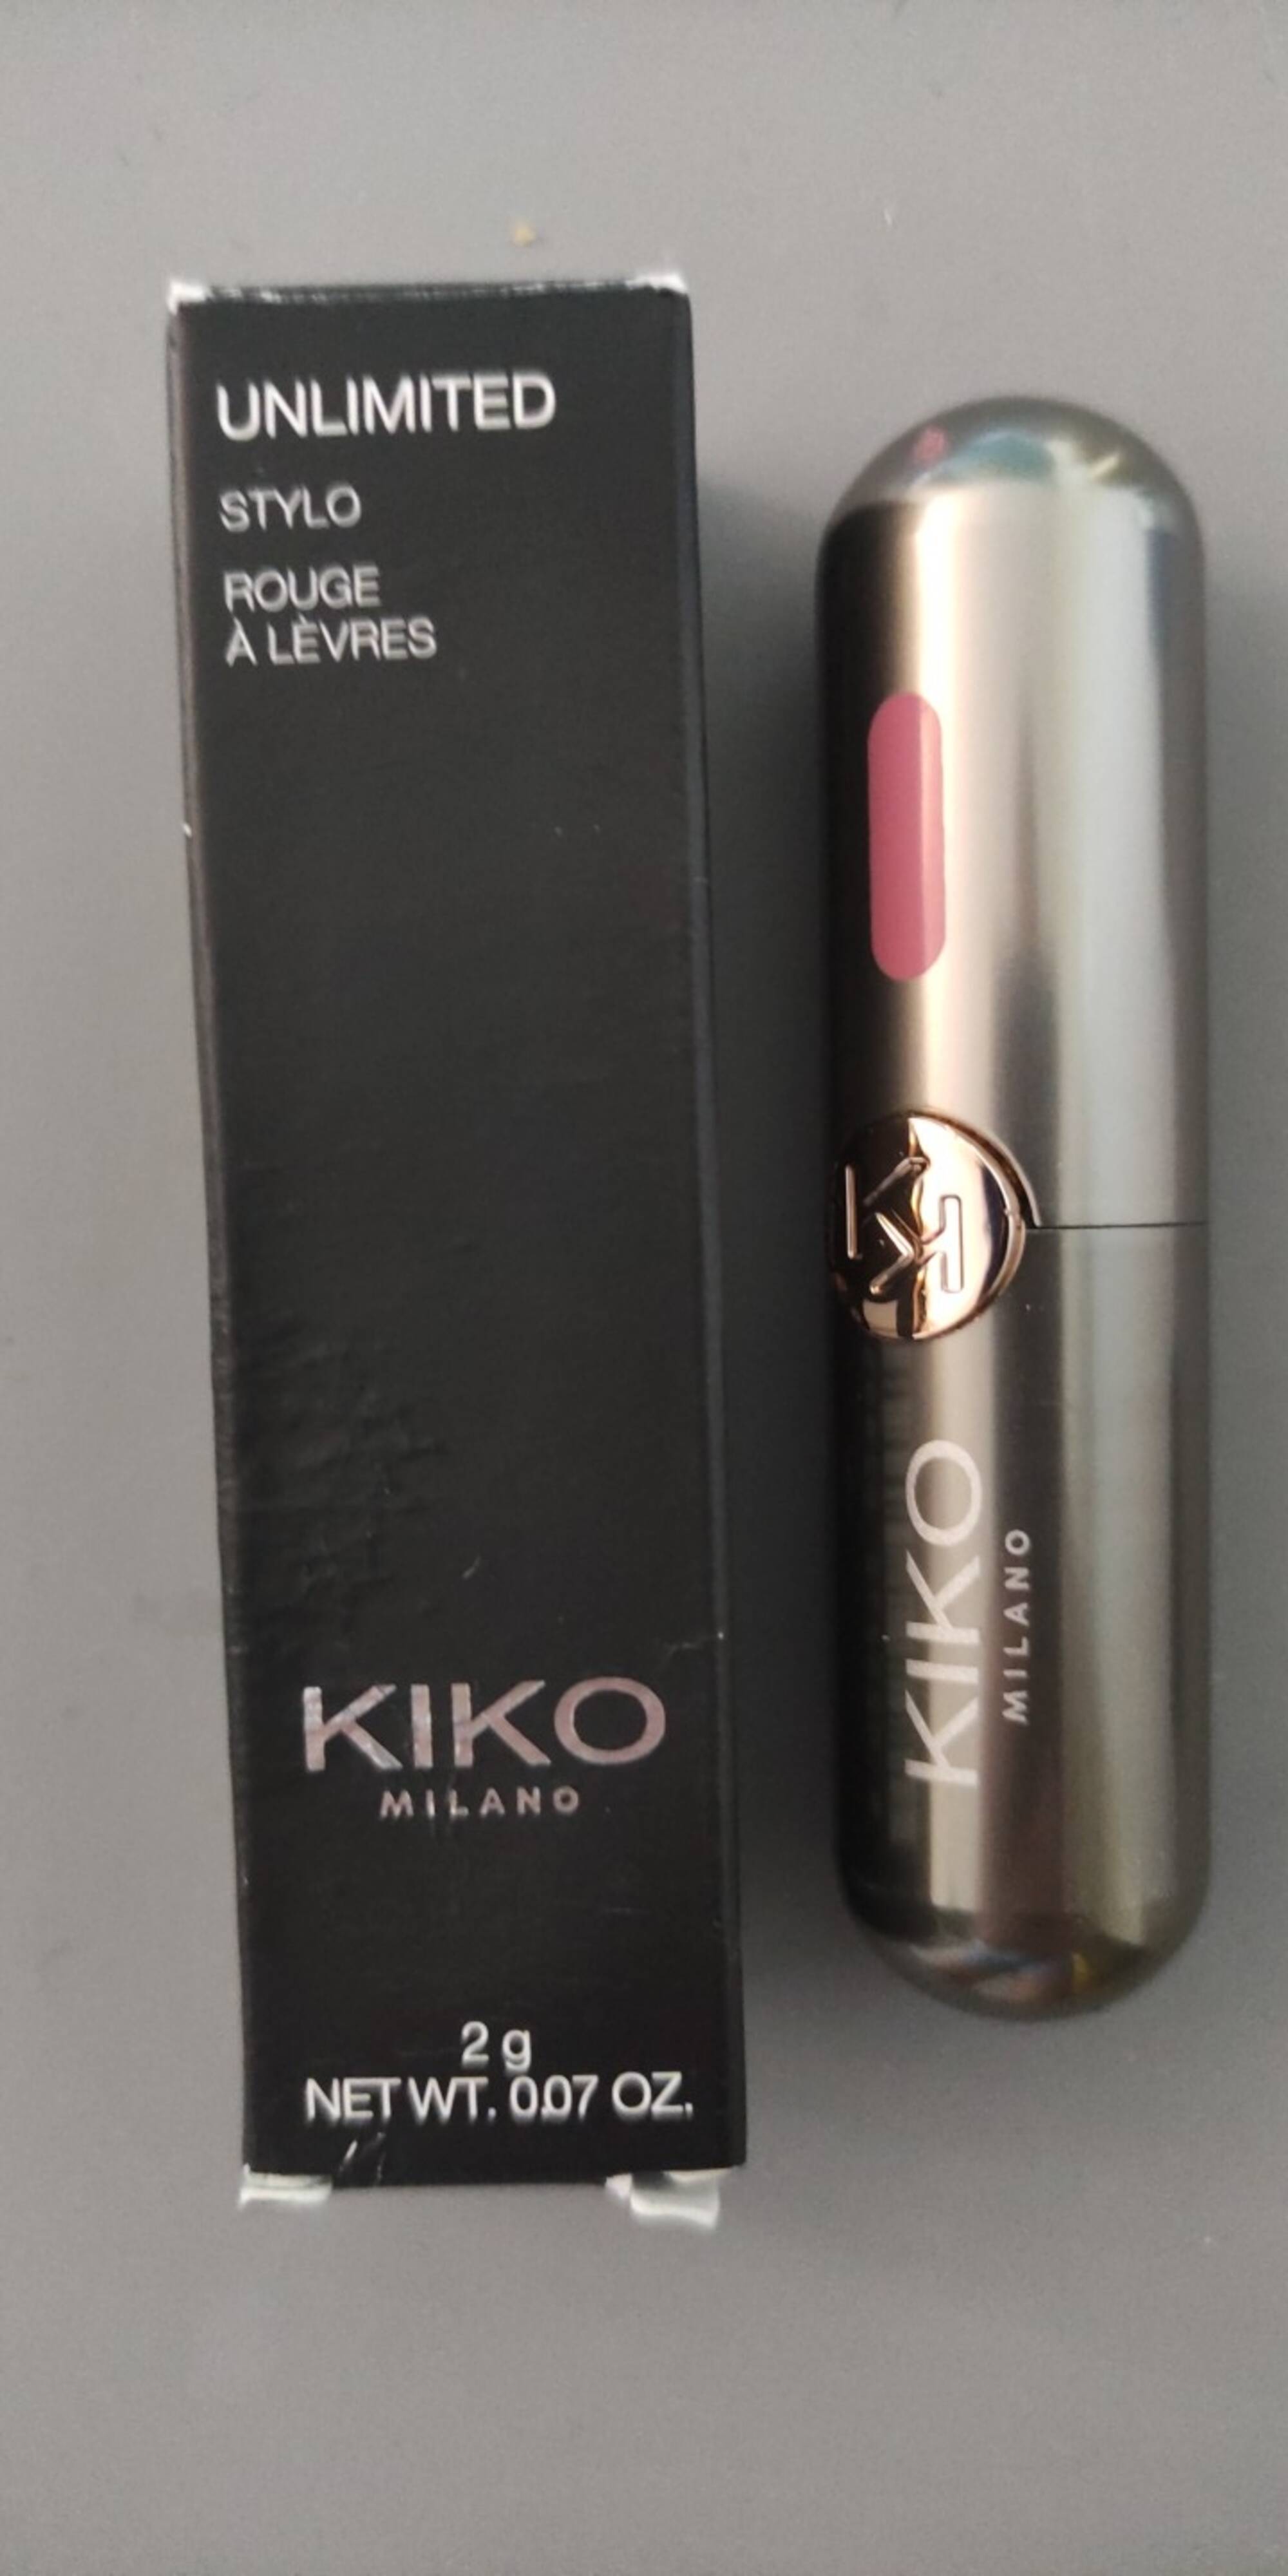 KIKO - Unlimited - Stylo rouge à lèvres